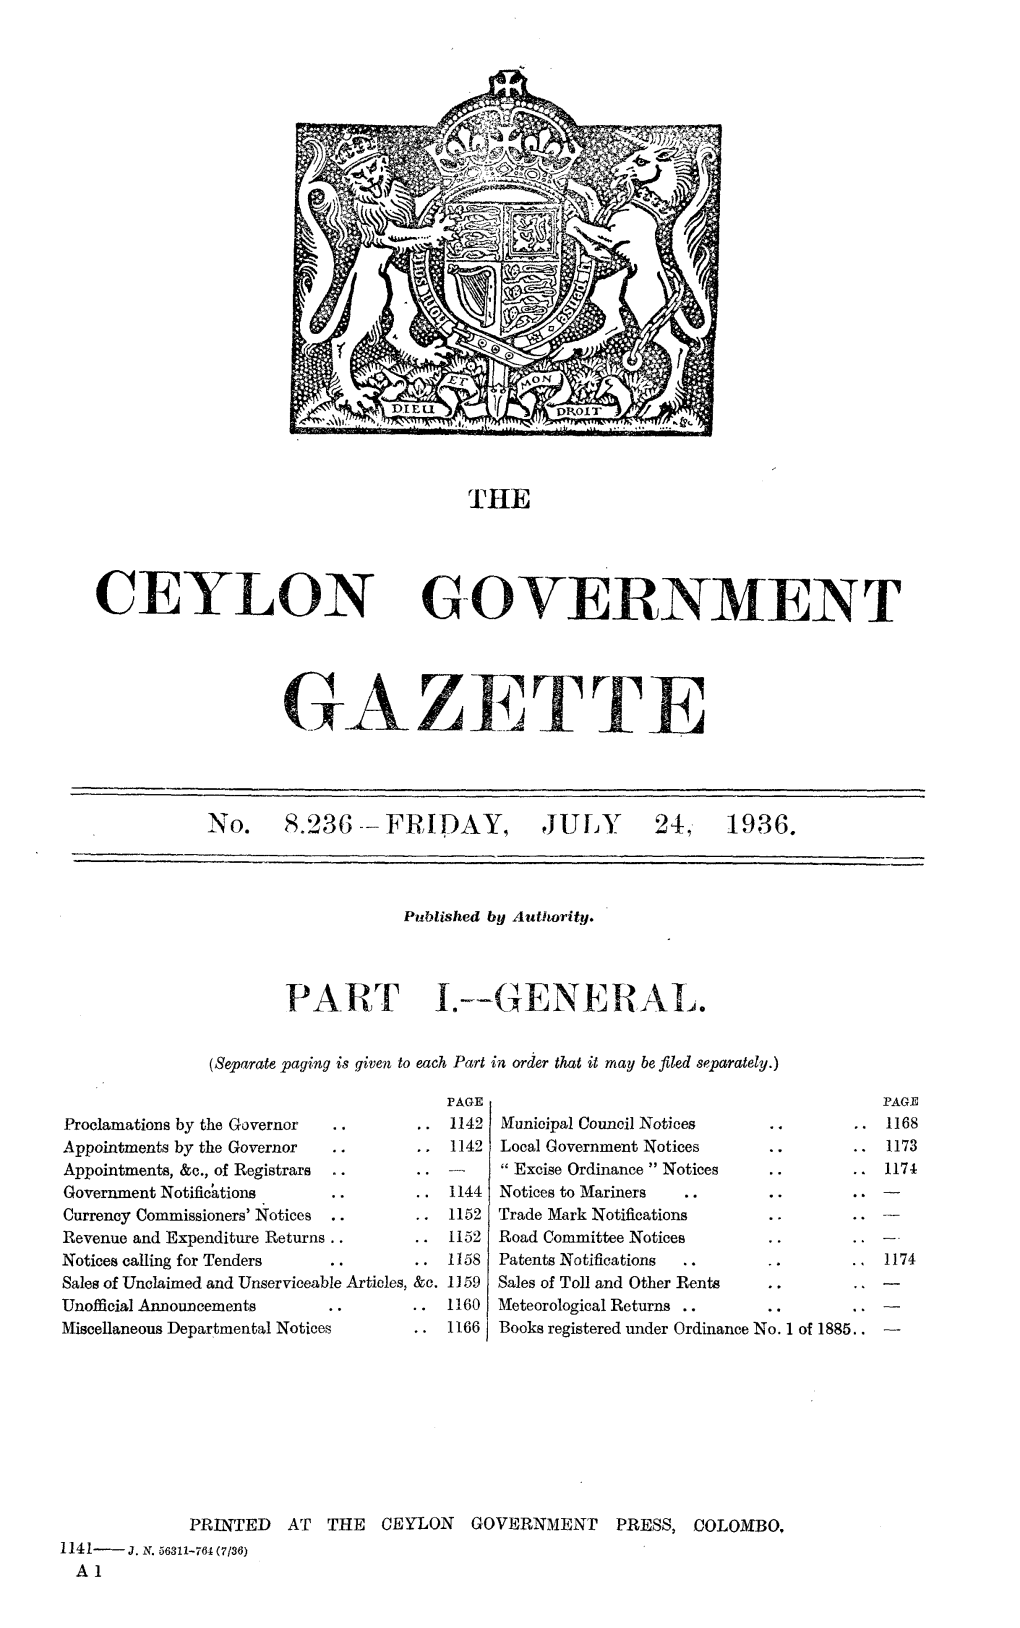 Ceylon Government